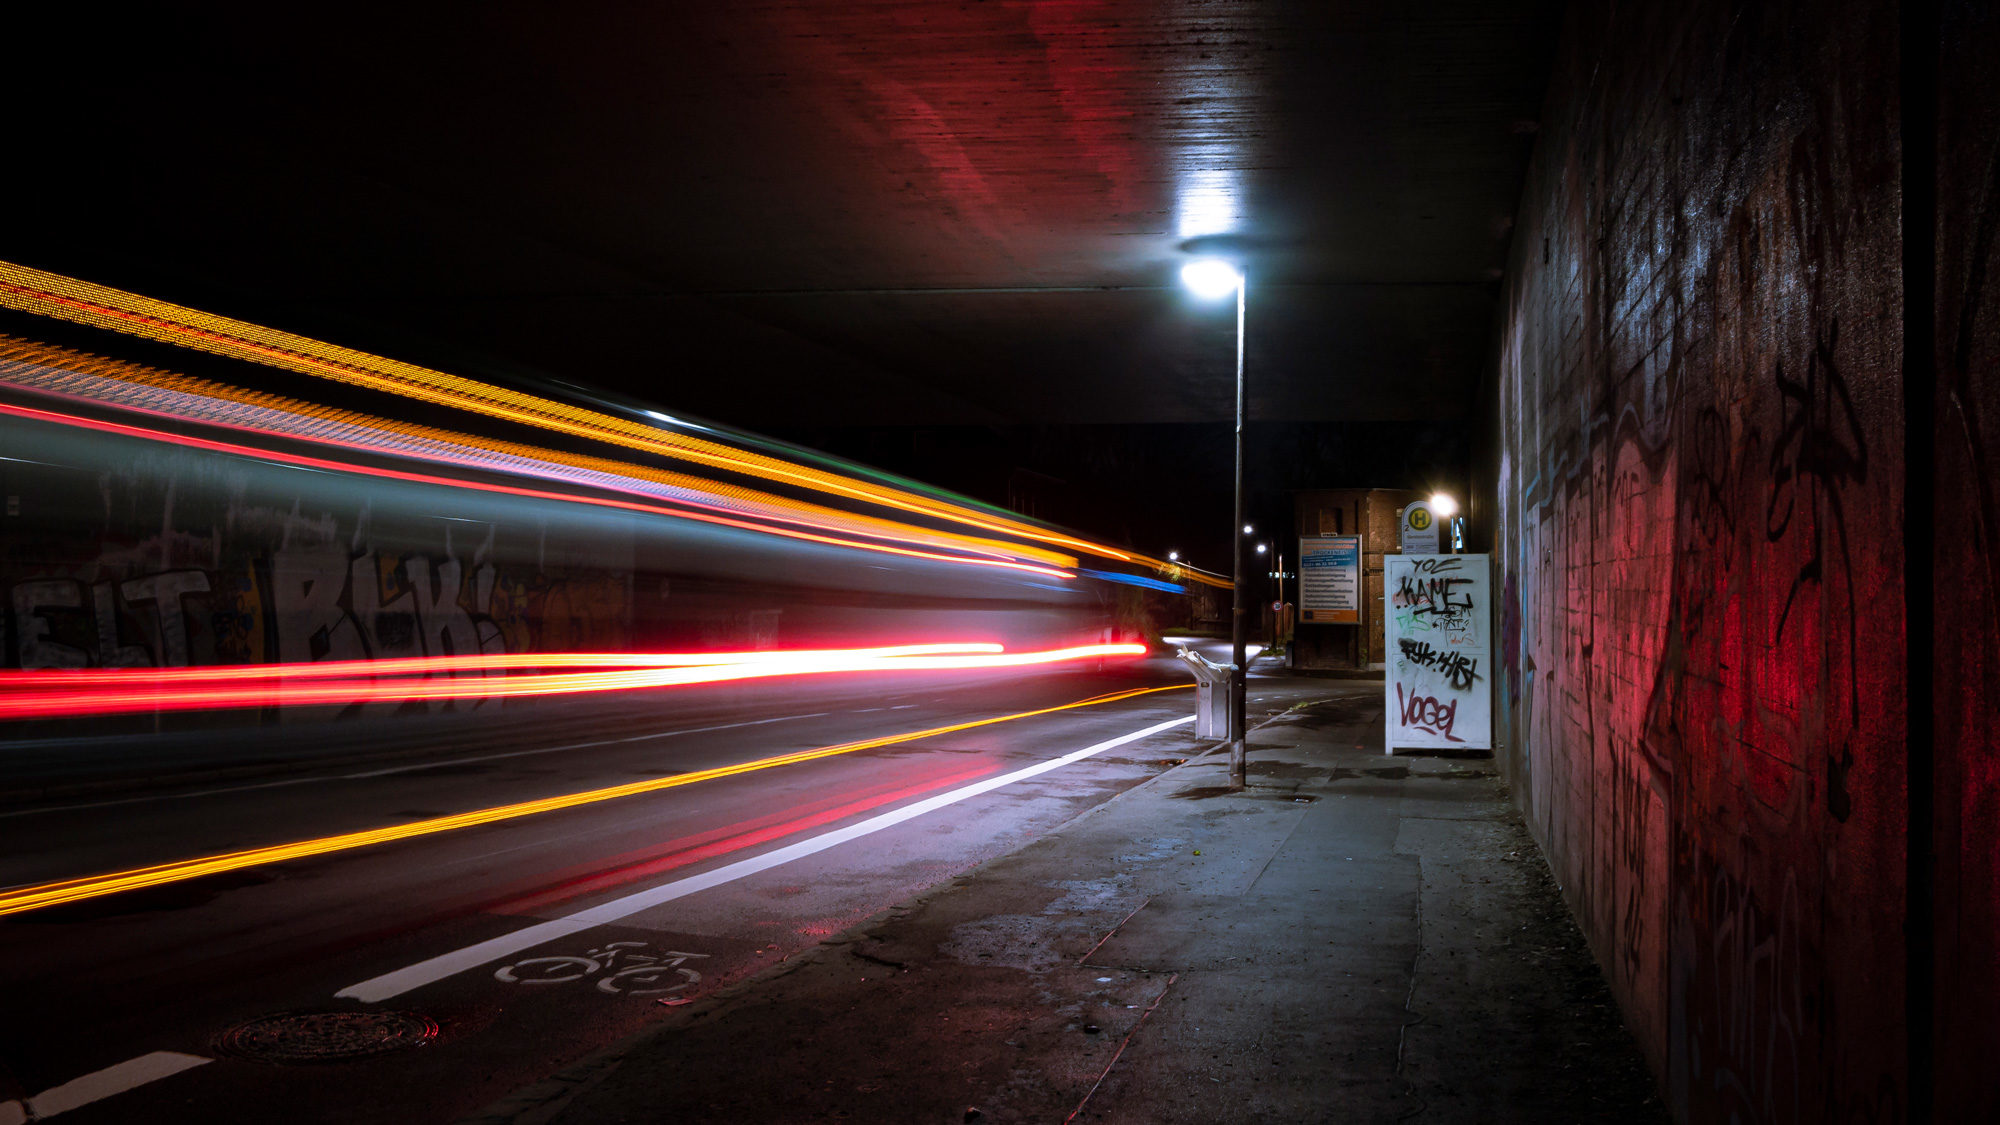 Eine Kurzgeschichte mit dem Namen: Messerstecherei. Das Bild zeigt eine dunkle Brücke bei Nacht. Die Lichter eines Busses sind aufgrund hoher Belichtungszeit nur als Linien zu erkennen